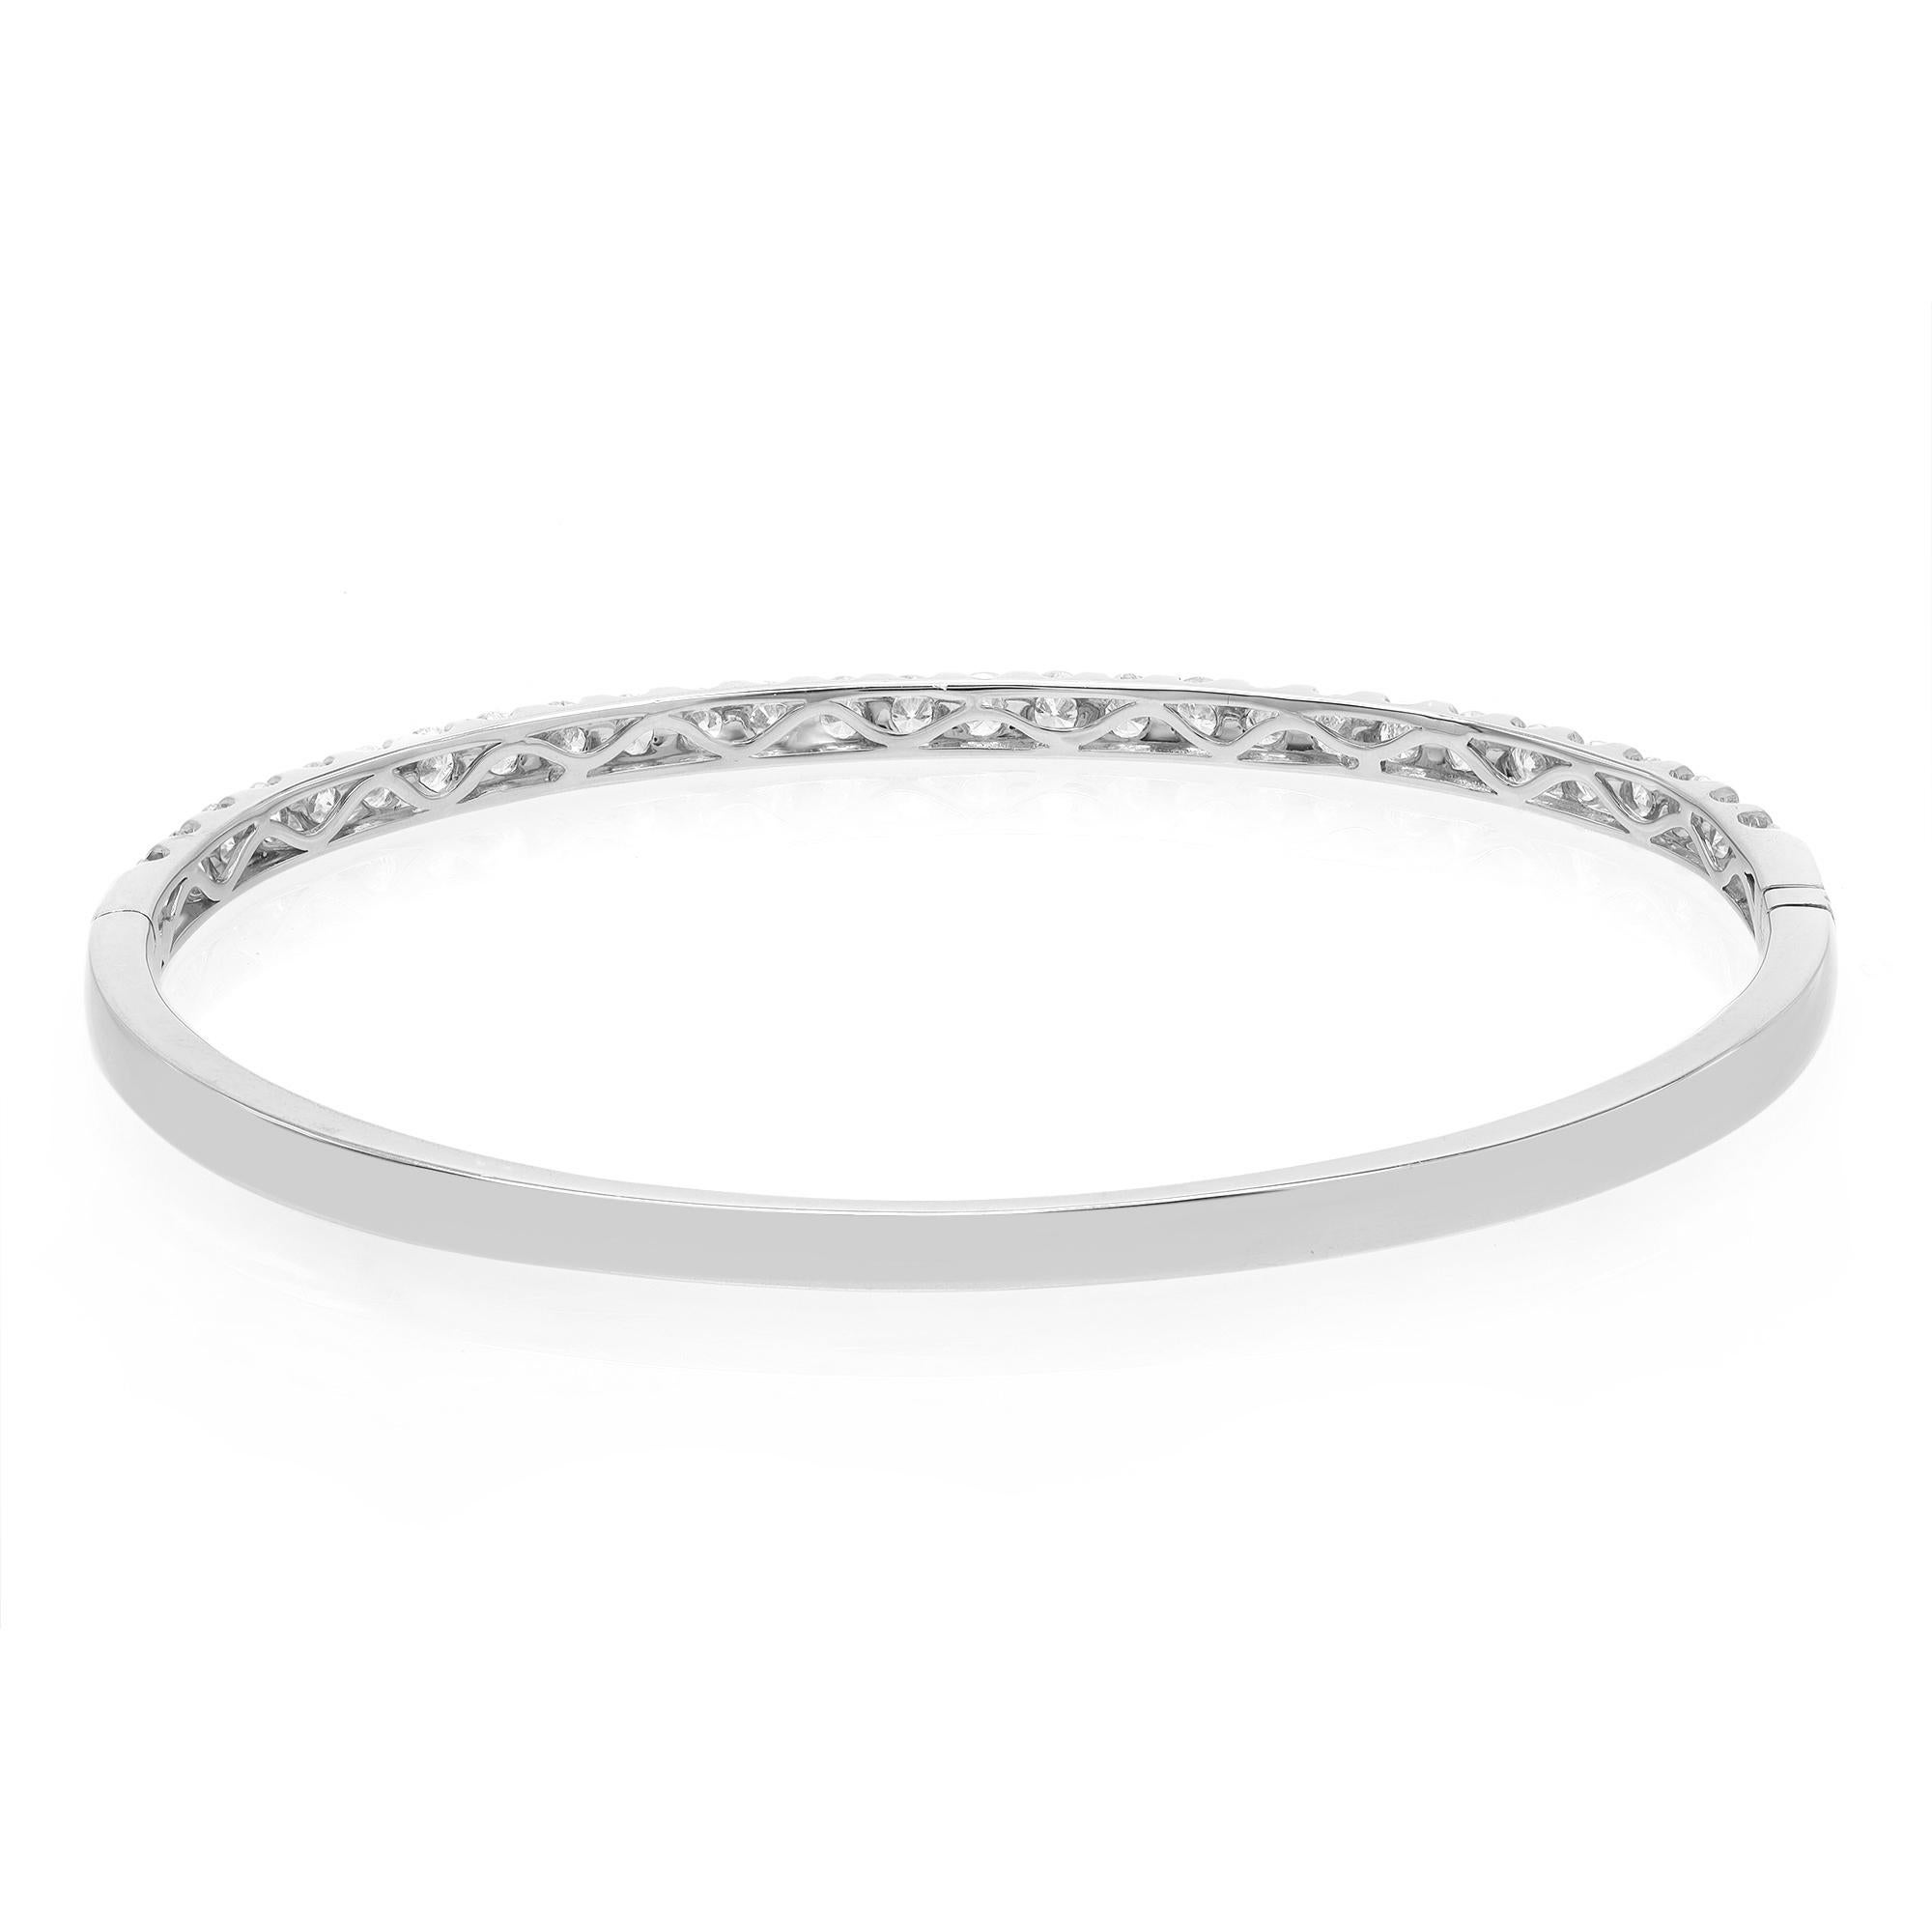 Modern Rachel Koen Round Cut Diamond Bangle Bracelet 18K White Gold 2.00Cttw For Sale